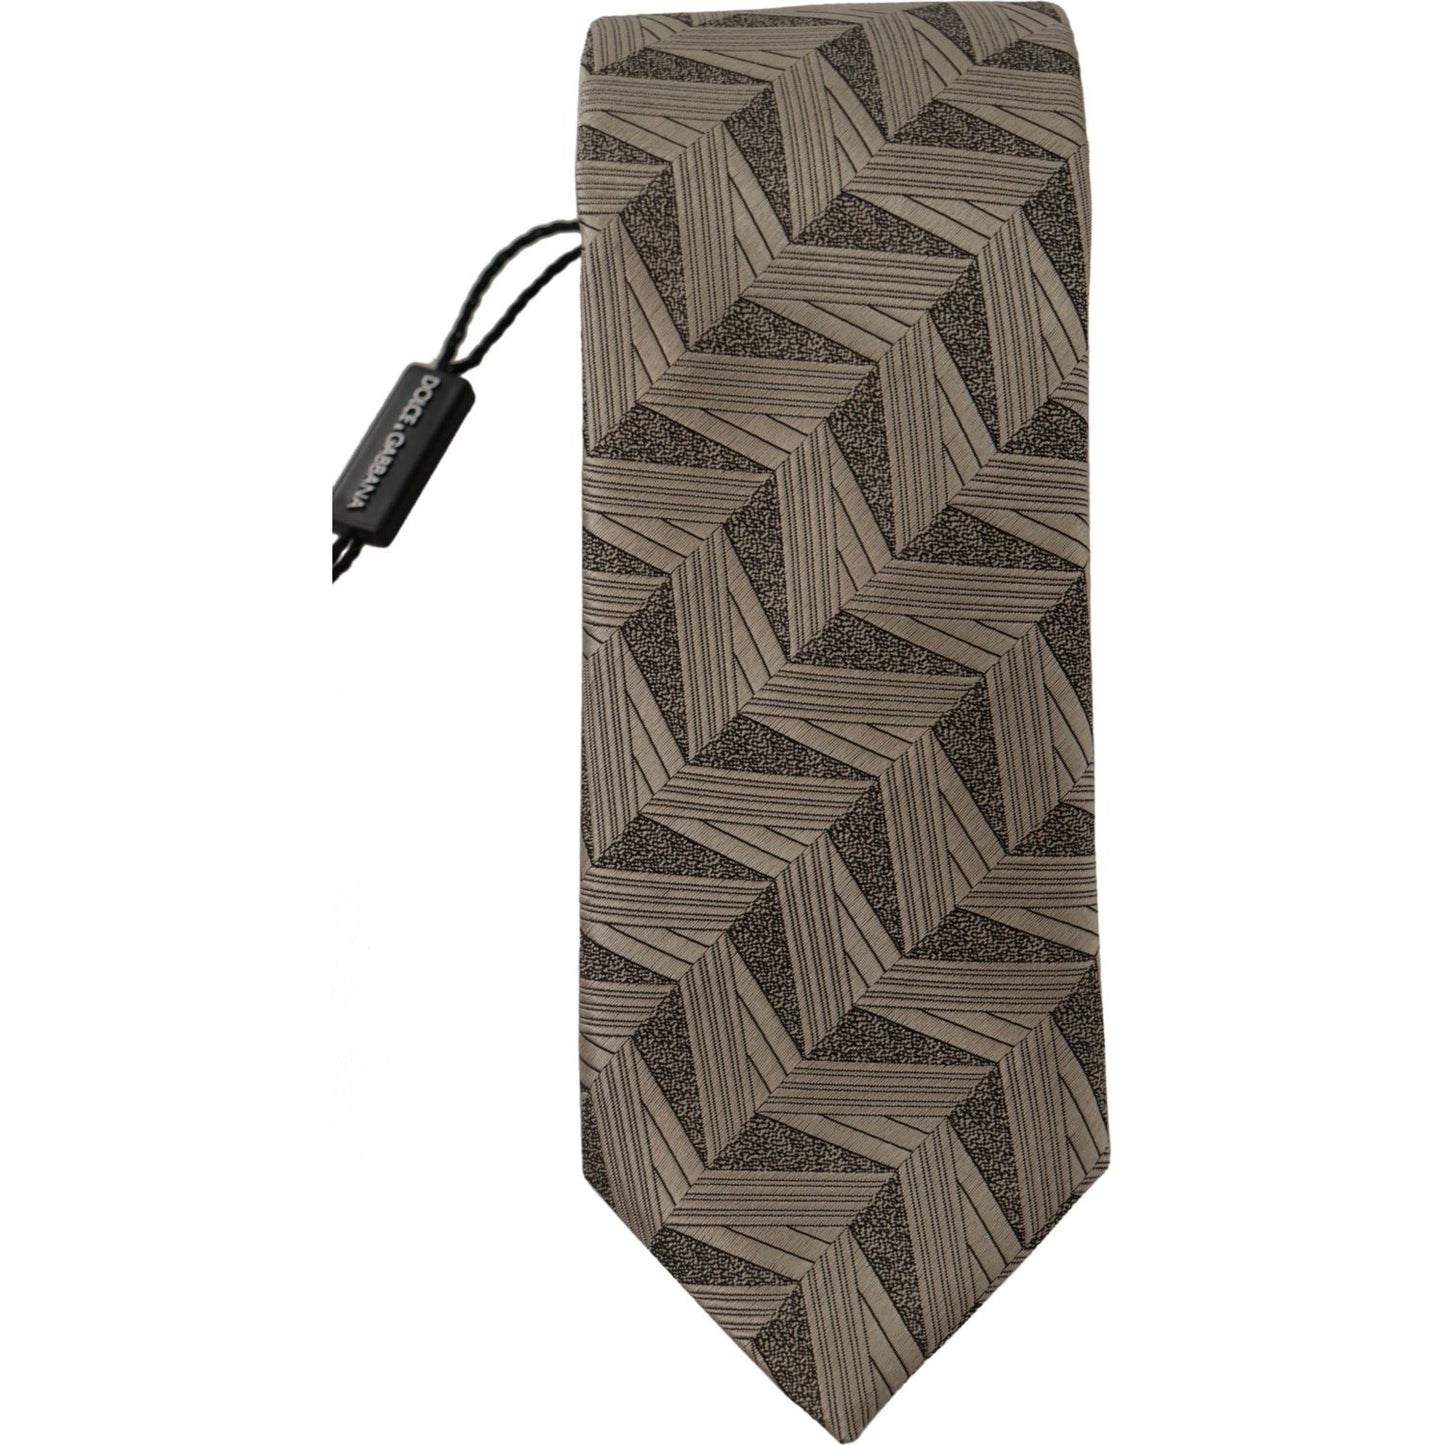 Dolce & Gabbana Stunning Beige Silk Bow Tie beige-fantasy-pattern-adjustable-necktie-accessory-tie IMG_3389-scaled-79eaf8c8-2ce.jpg